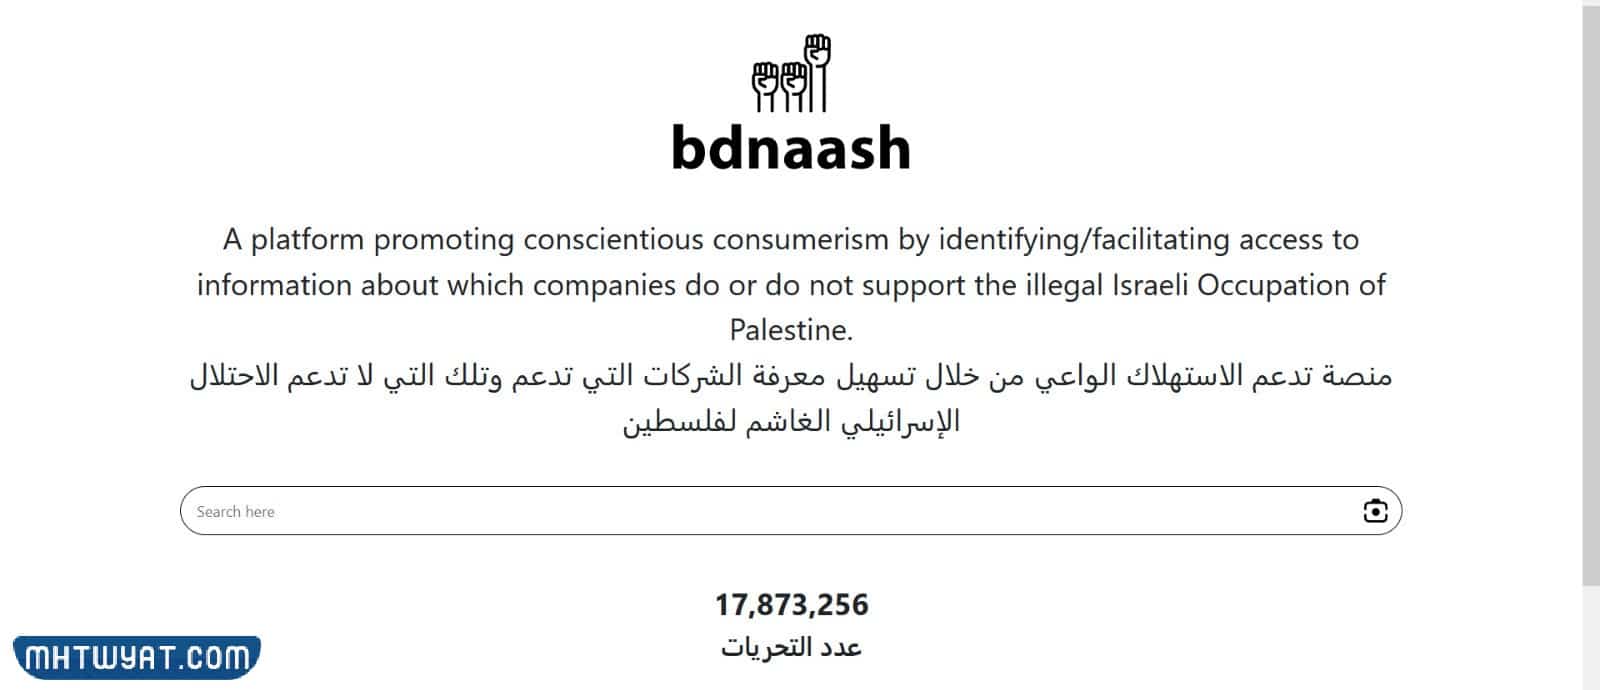 الدخول على الموقع الرسمي الخاص ببدناش bdnaash